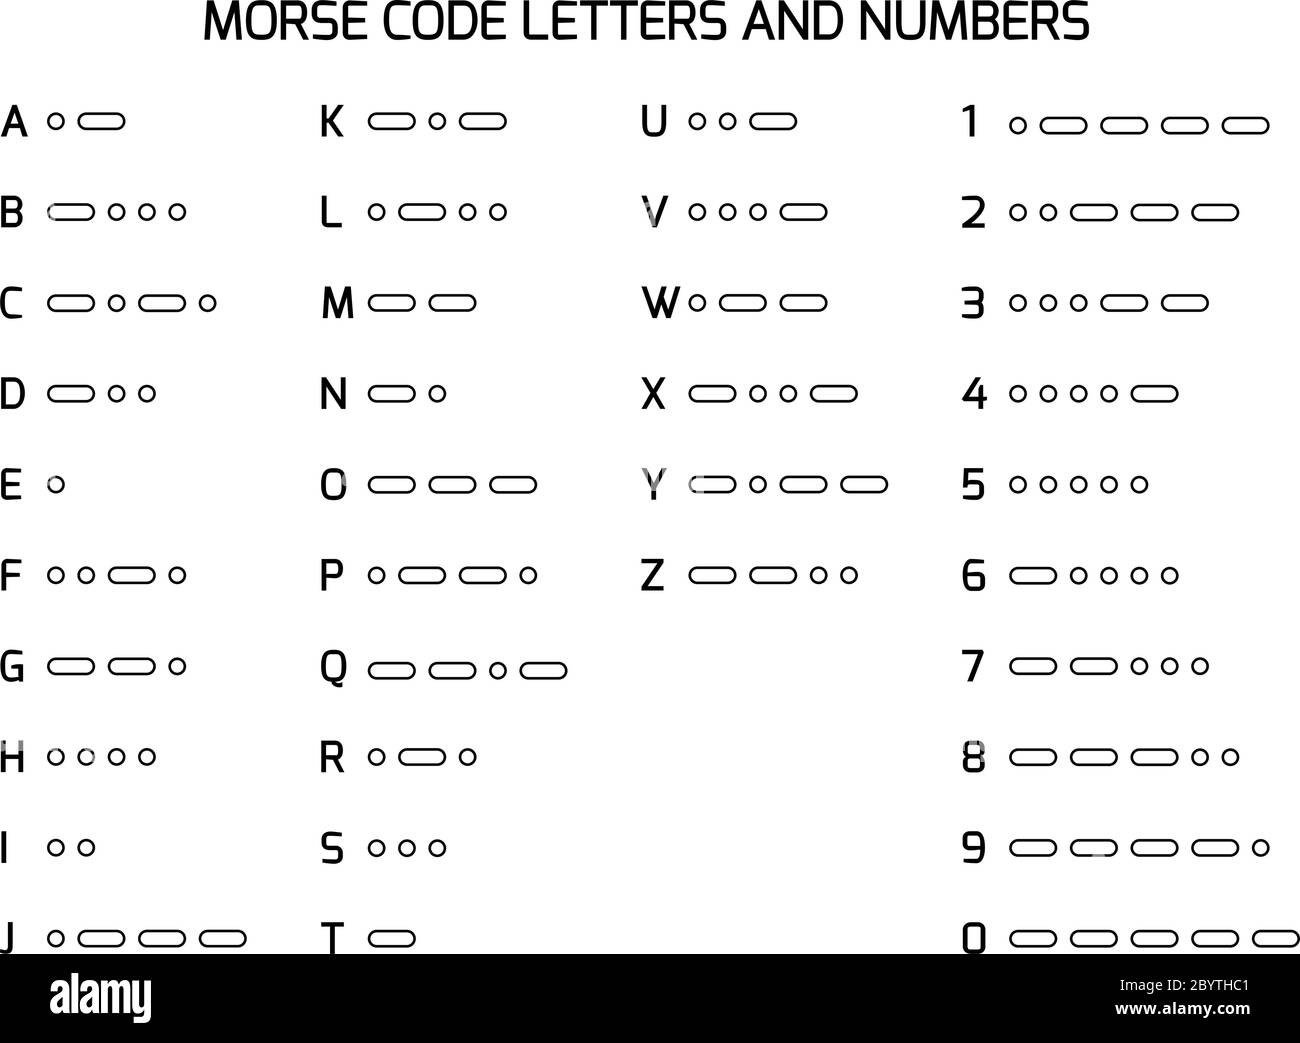 Internationales Morsecode-Alphabet. Satz von codierten Buchstaben und  Zahlen zu Punkten und Bindestrichen. Wird in der Funk- oder  Lichtkommunikation verwendet. Vektorgrafik Stock-Vektorgrafik - Alamy